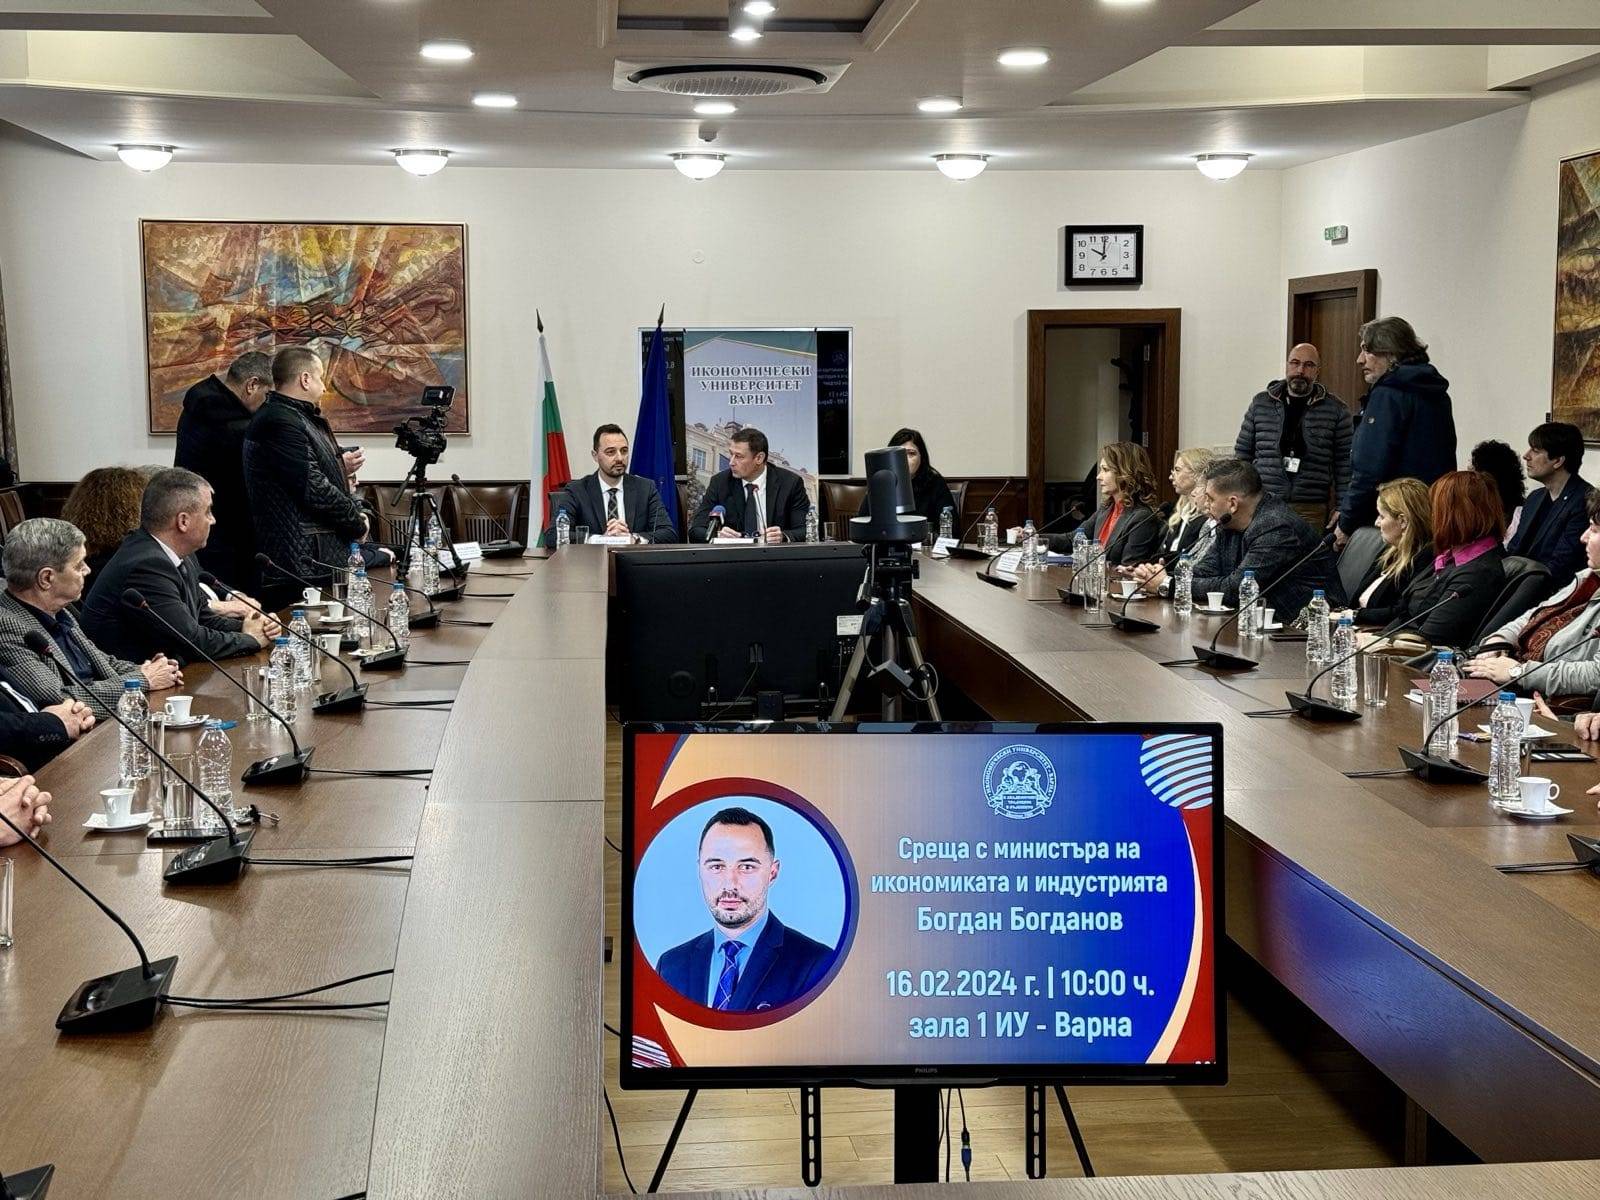  Министърът на икономиката и индустрията Богдан Богданов се срещна с академичното ръководство, преподаватели и студенти в Икономическия университет в града